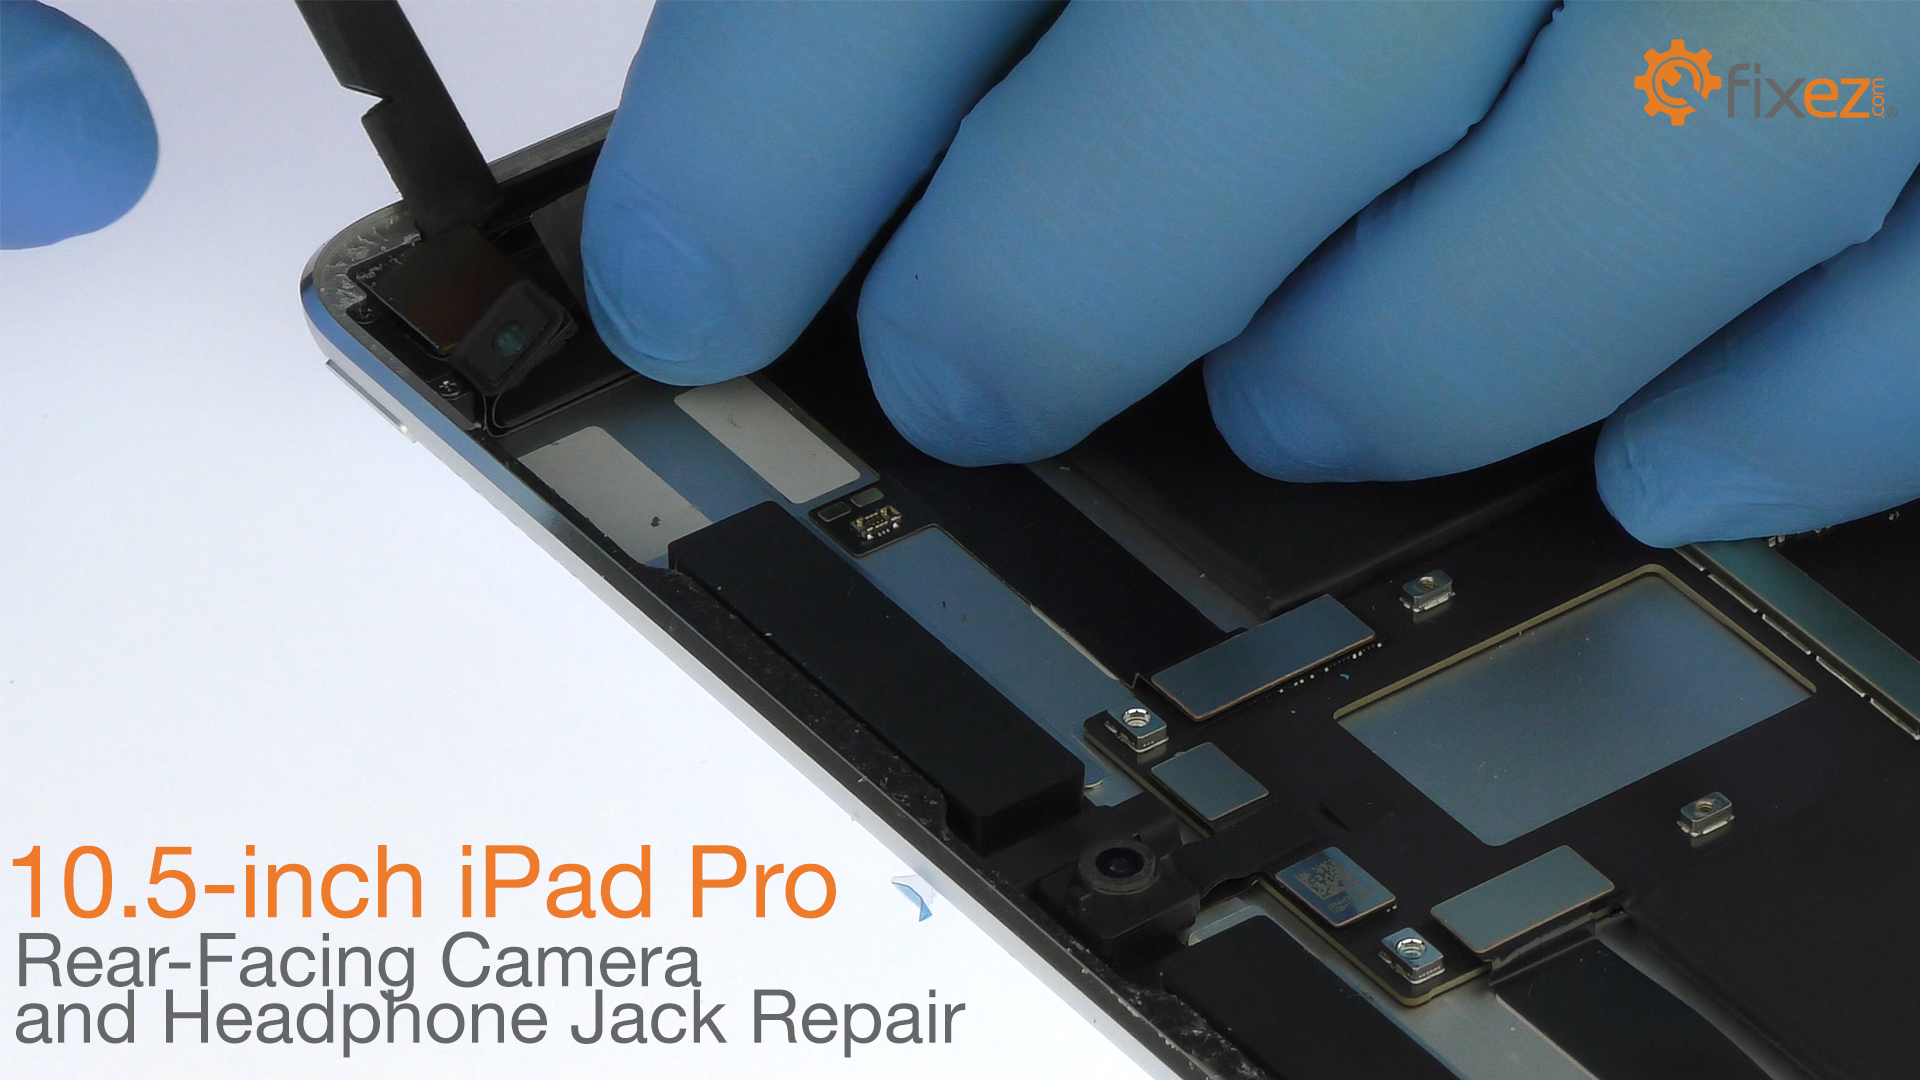 iPad Pro 10.5" Rear-Facing Camera and Headphone Jack Repair